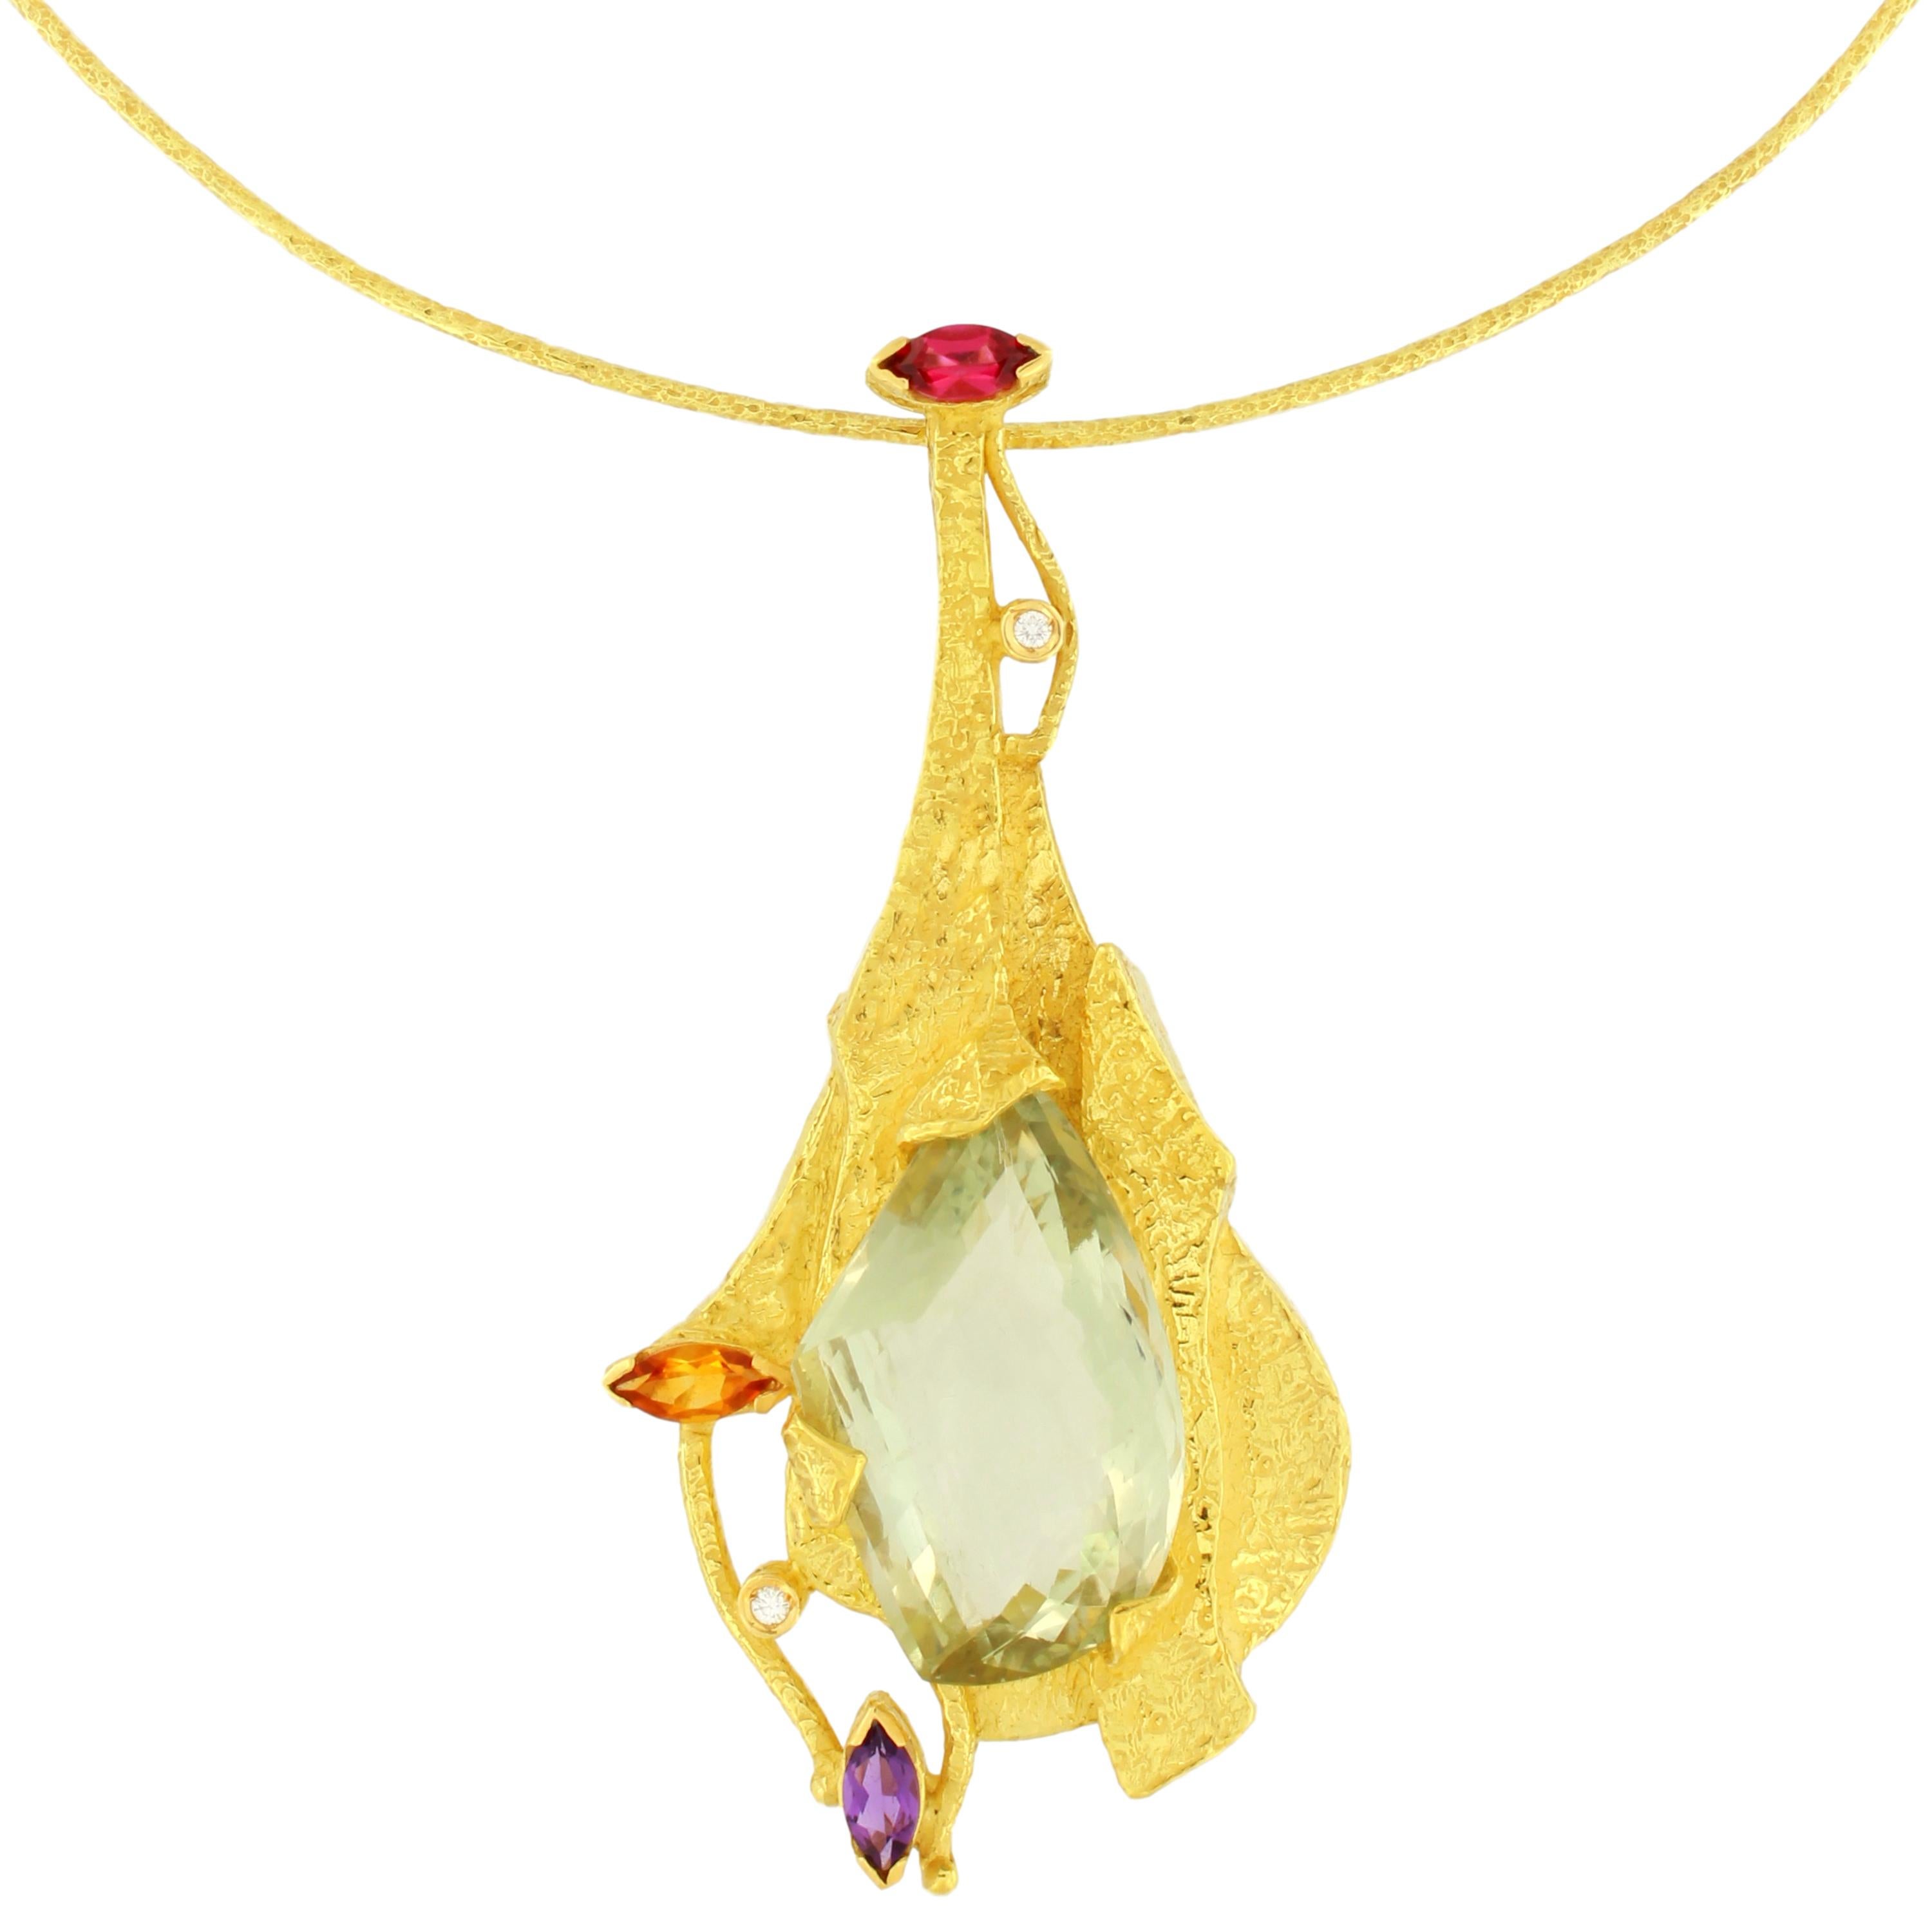 Exquis collier pendentif en or jaune satiné orné de pierres précieuses multicolores, de la collection 